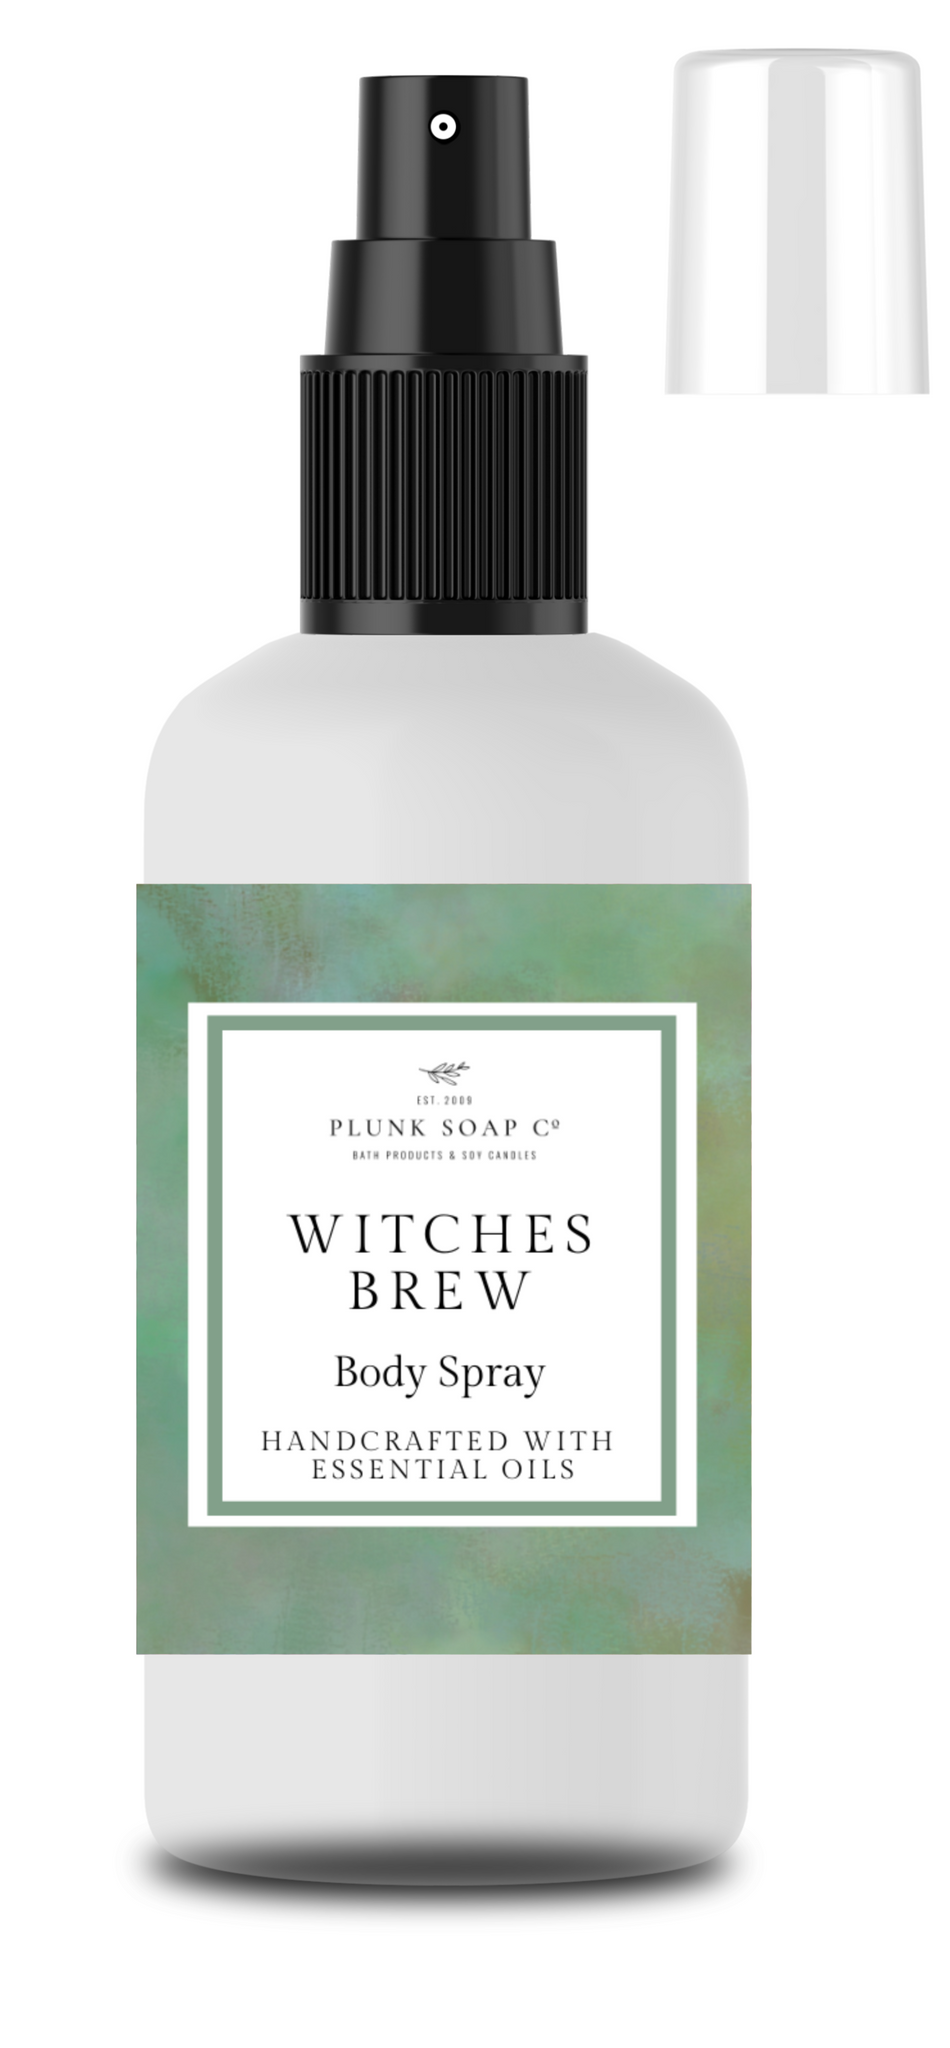 Witches Brew Body Spray